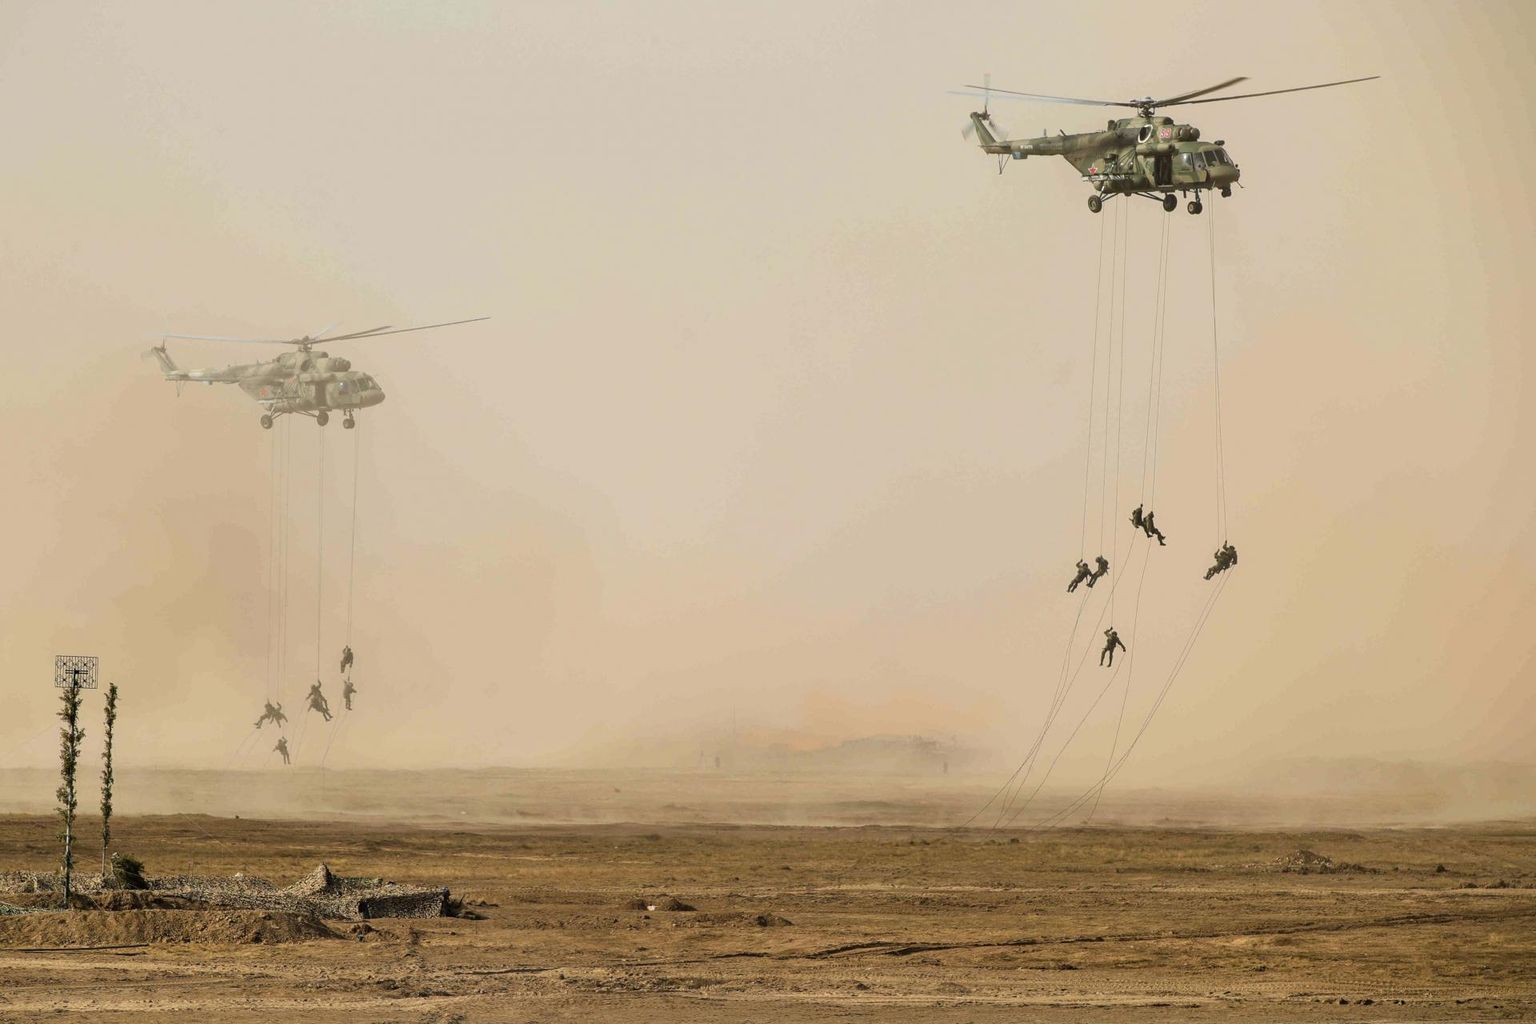 Õppusel Kavkaz-2020 osalenud sõjaväelased laskumas helikopteritelt Kapustin Jari polügoonil. 